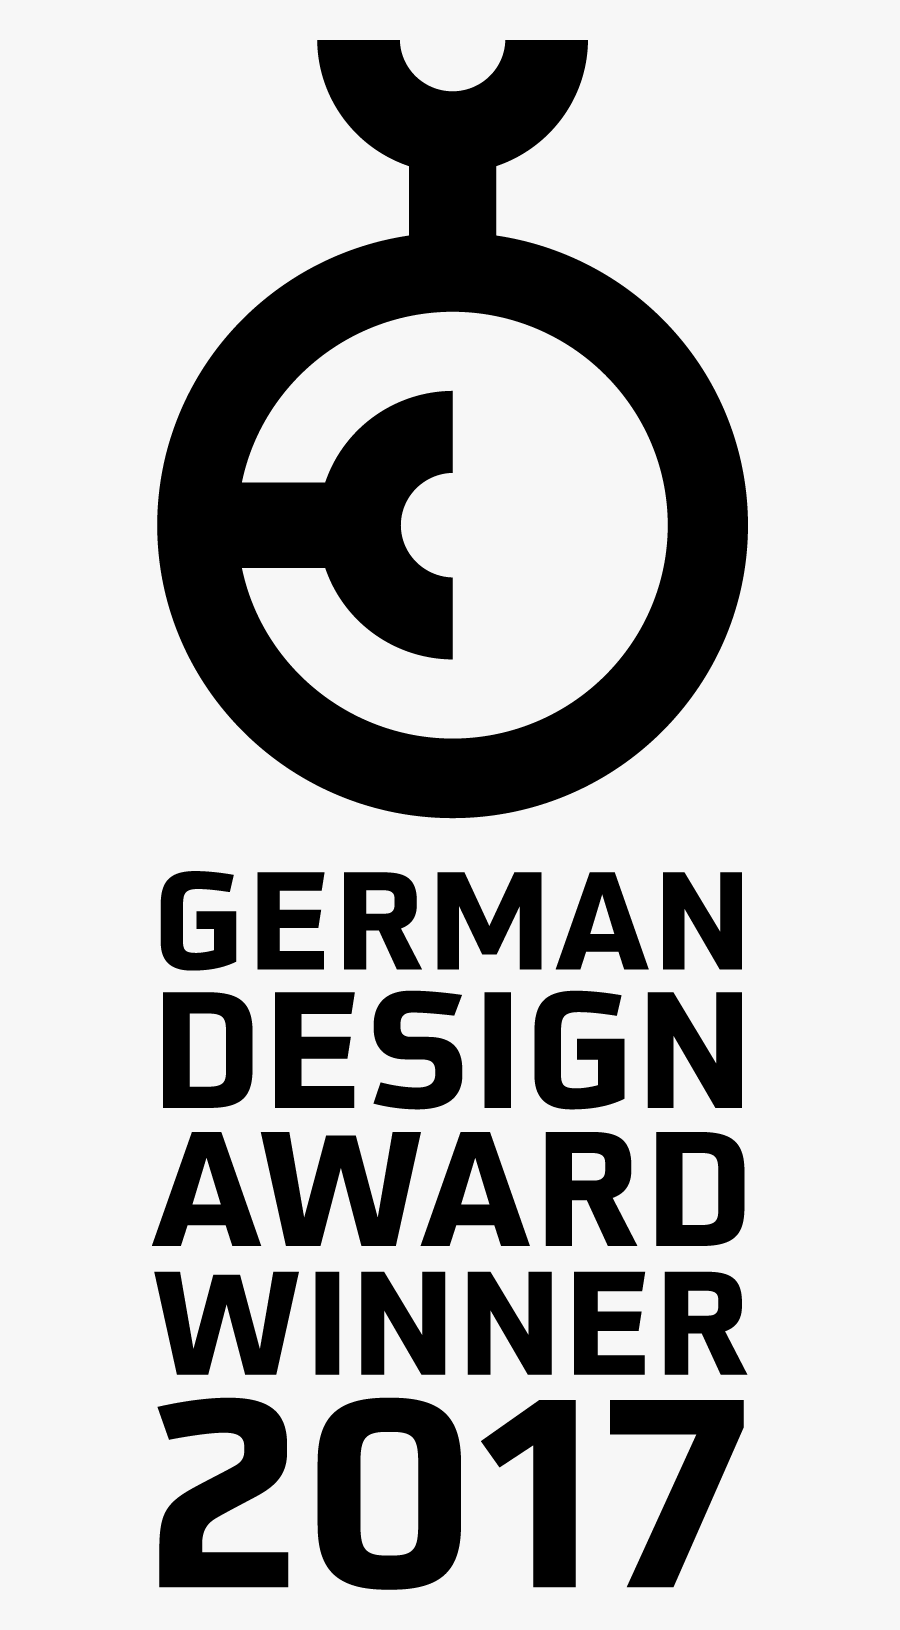 German Design Award Winner 2017, Transparent Clipart